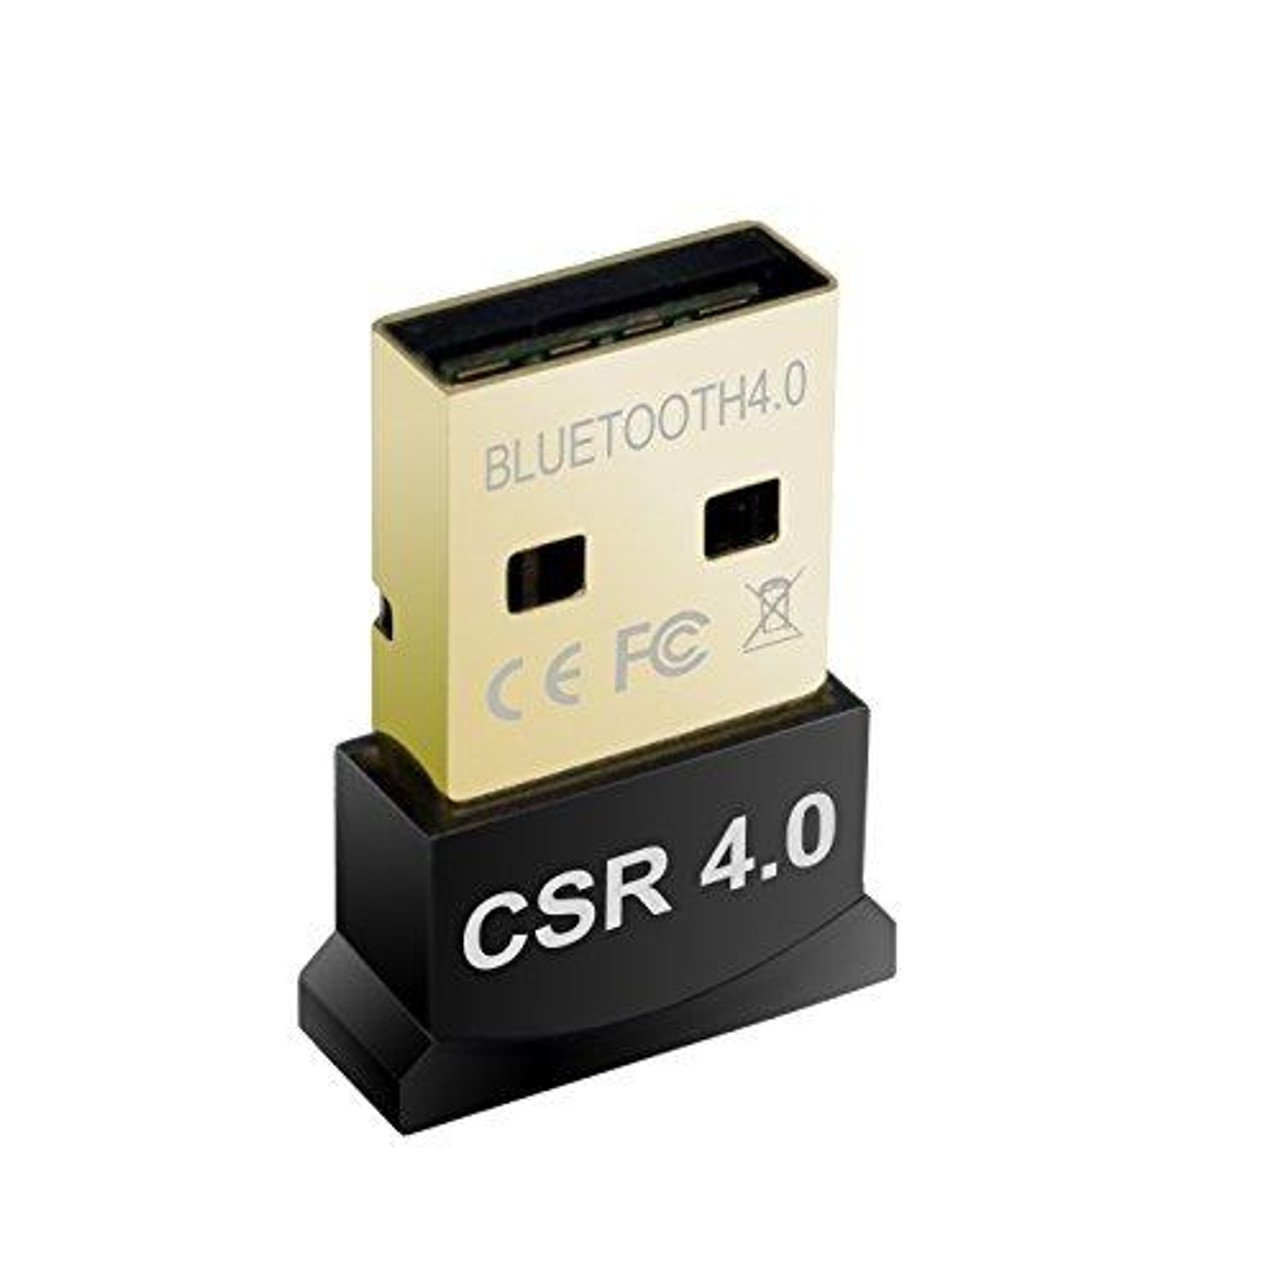 USB Bluetooth 4.0 Adapter